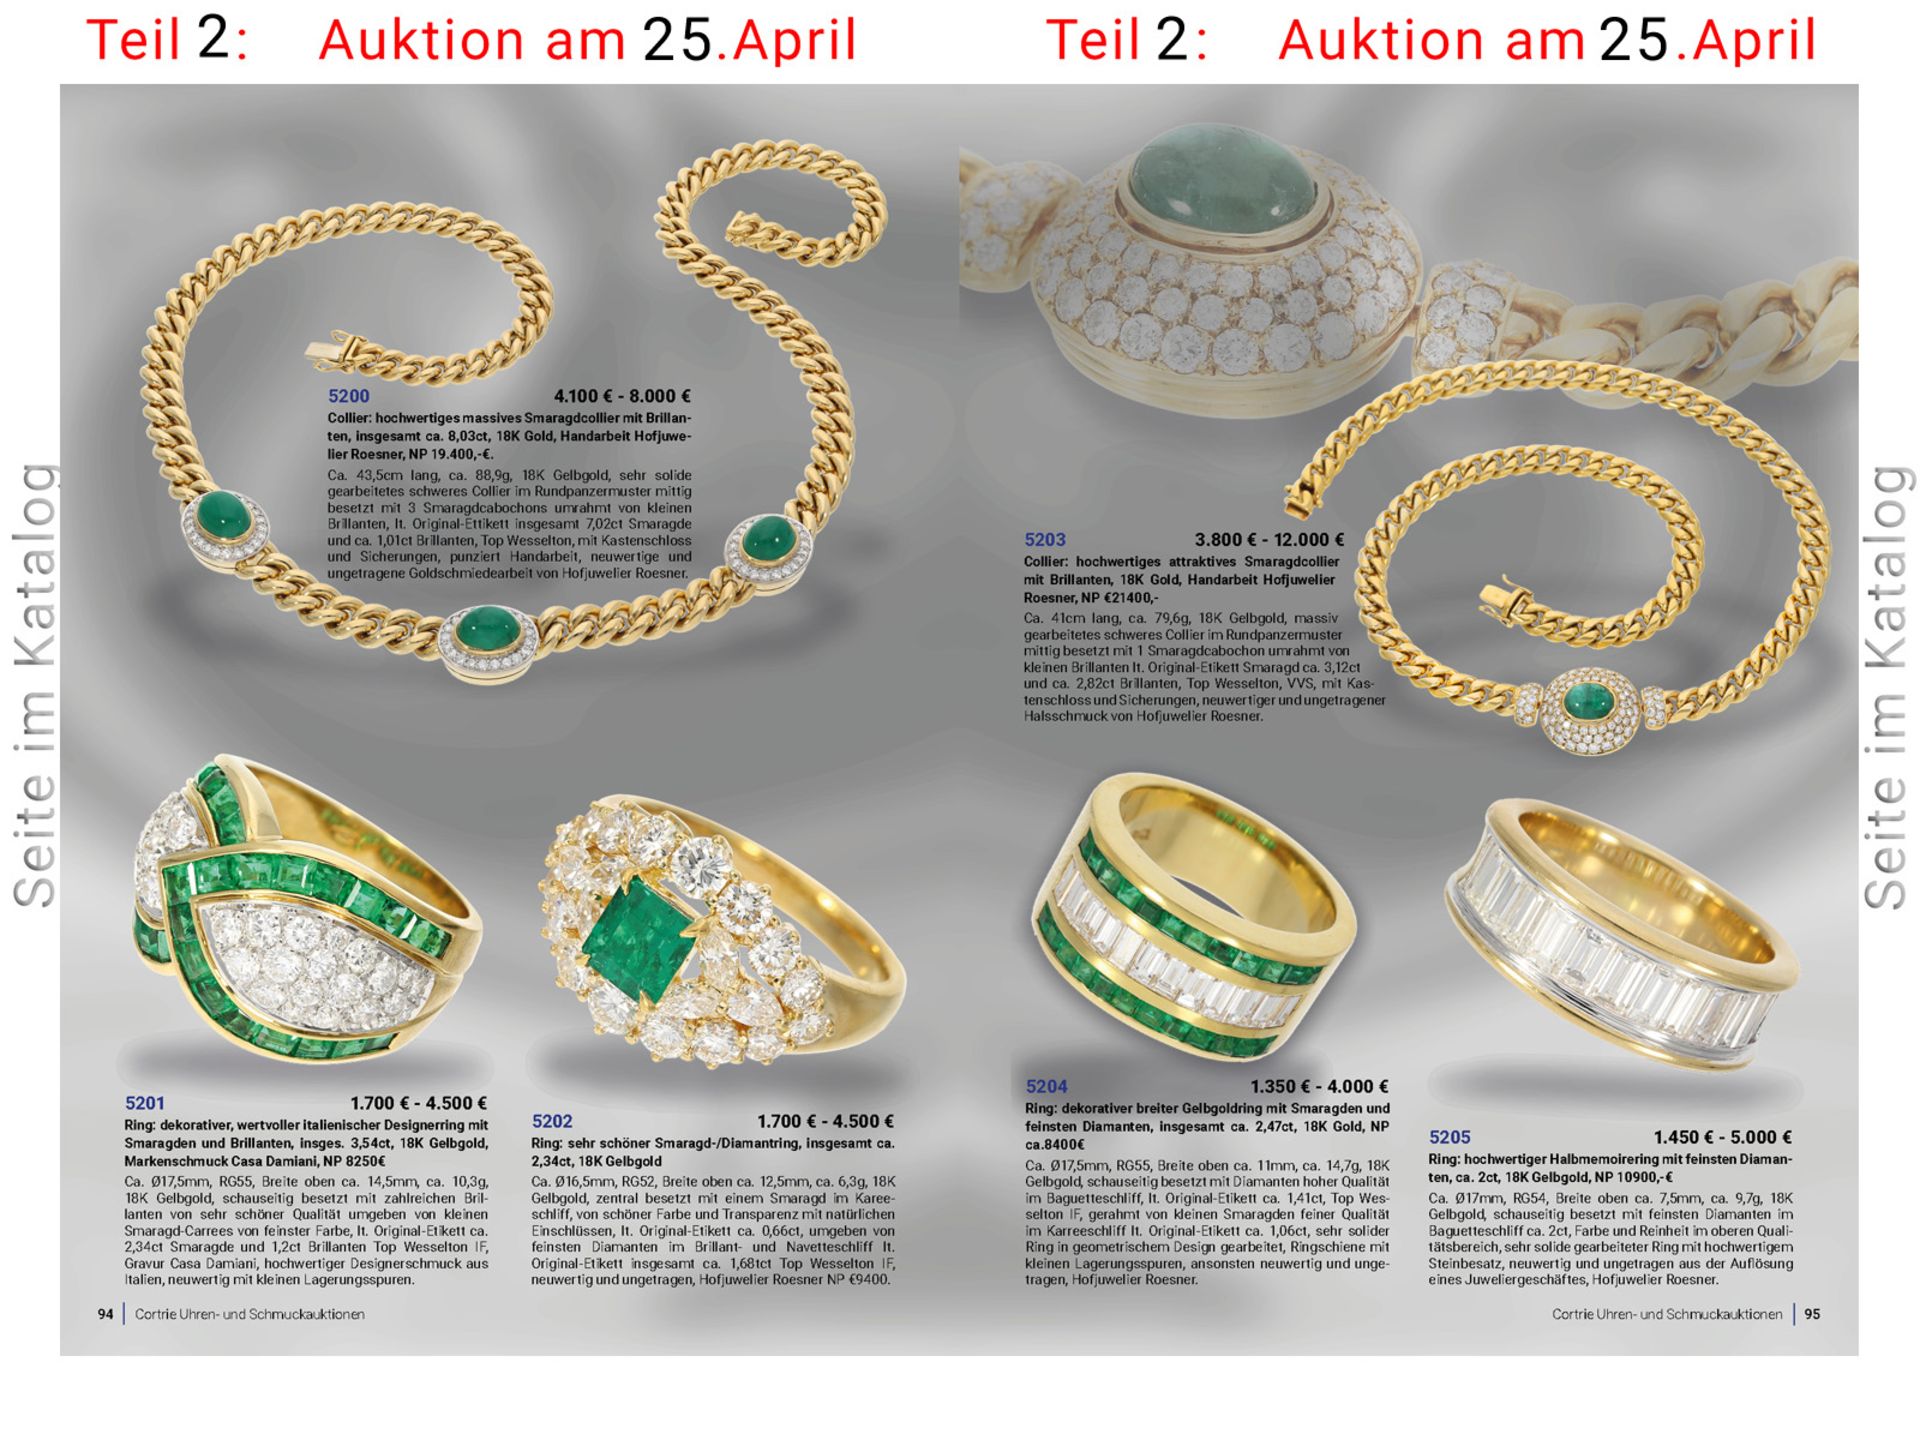 Ring: dekorativer, wertvoller italienischer Designerring mit Smaragden und Brillanten, insges. 3, - Bild 3 aus 3